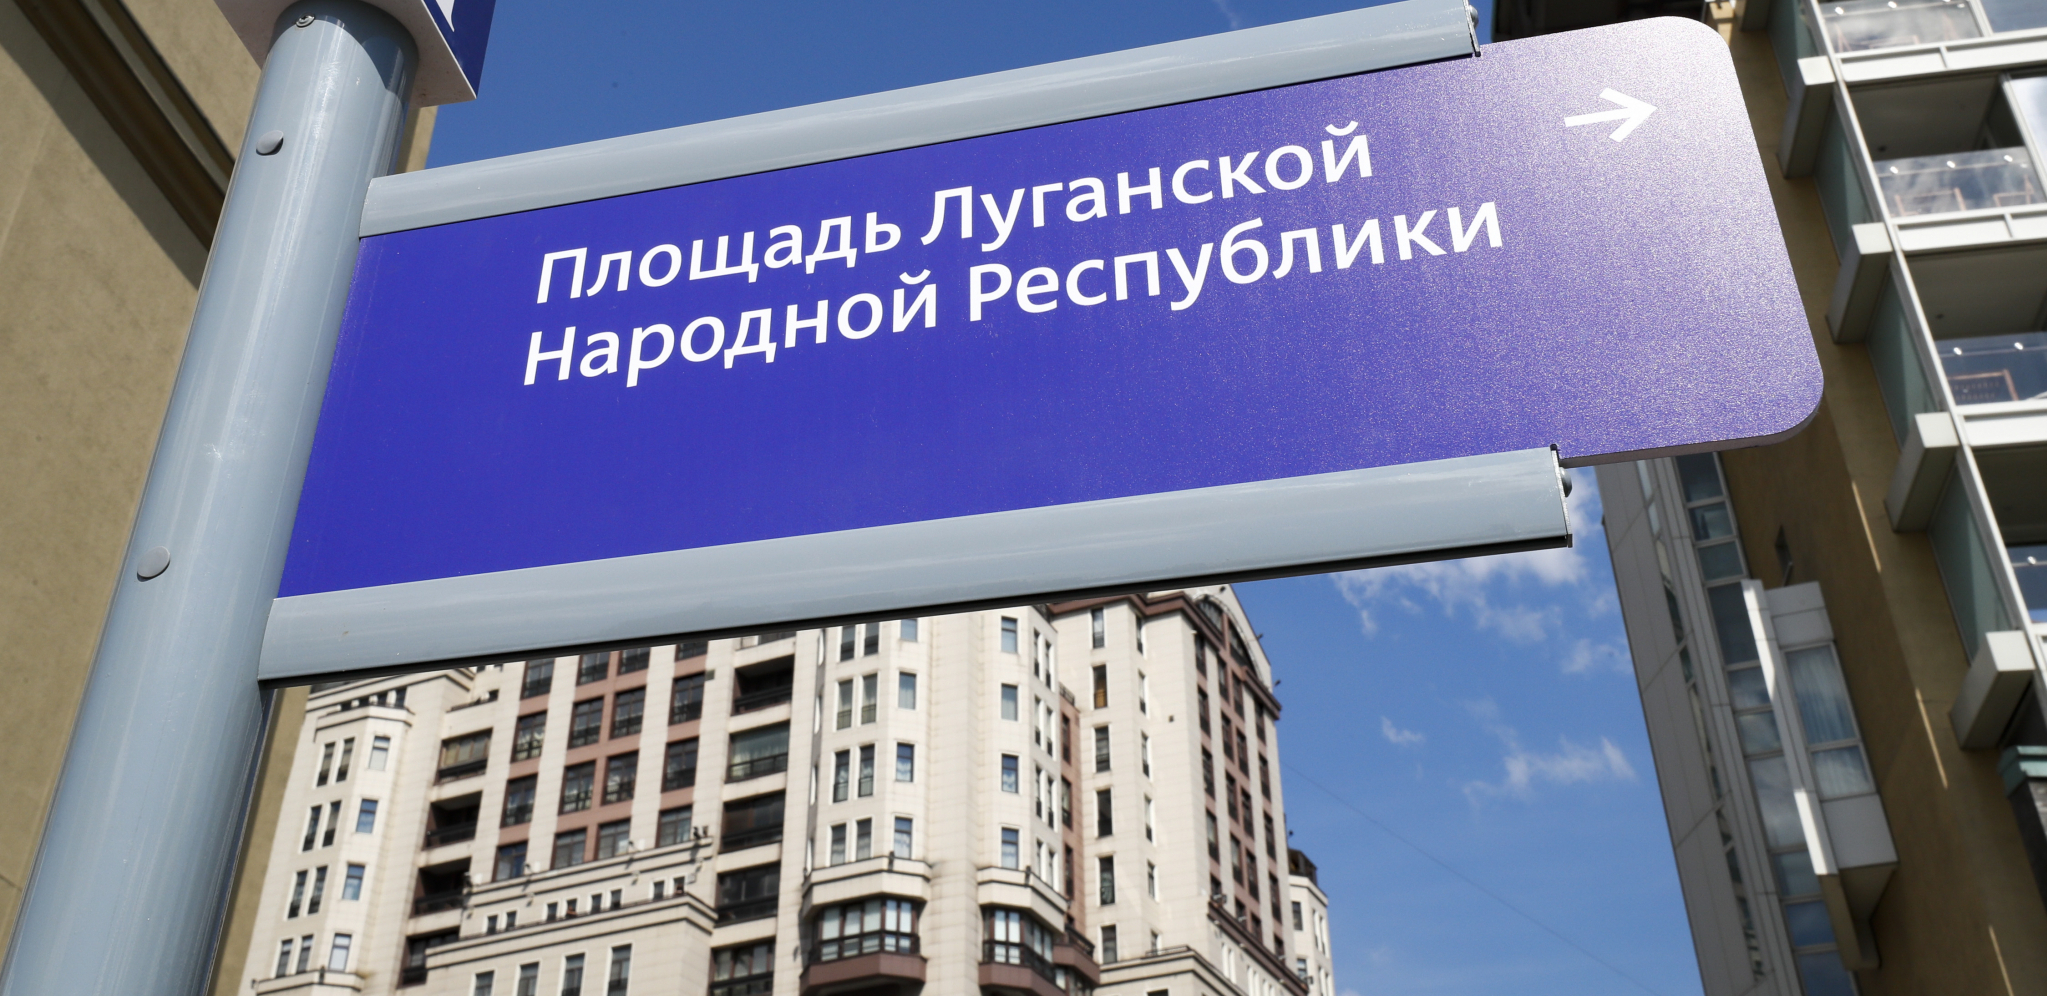 SAD SE ZOVU PO LUGANSKU I DONJECKU Moskva preimenovala ulice gde su britanska i američka ambasada